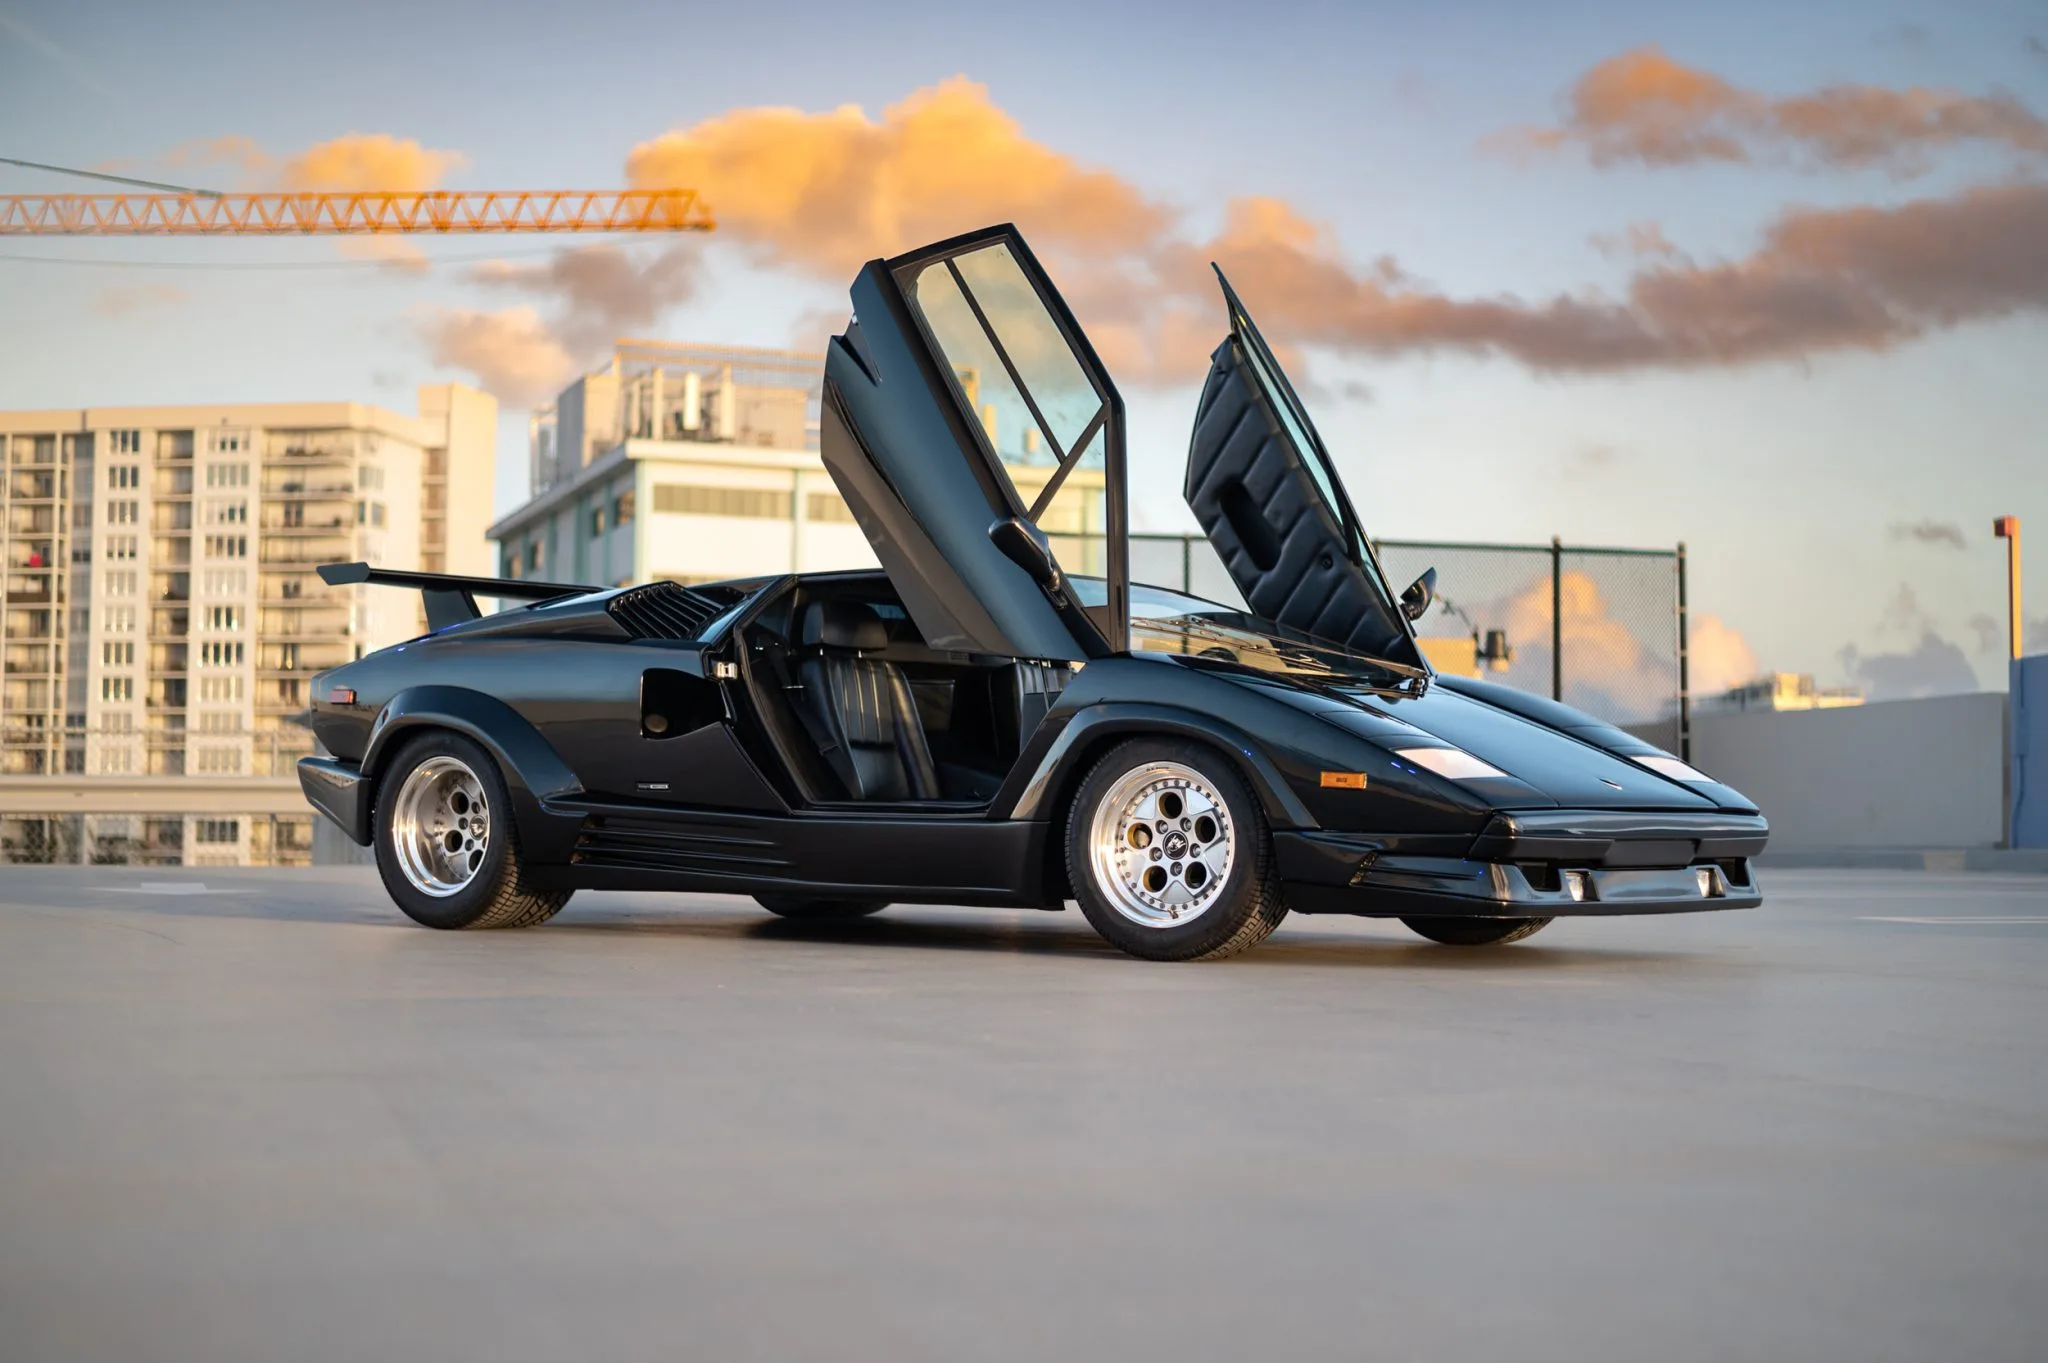 1989 Lamborghini Countach 25th Anniversary worth $1M? Yes! – The Rienzi  Report